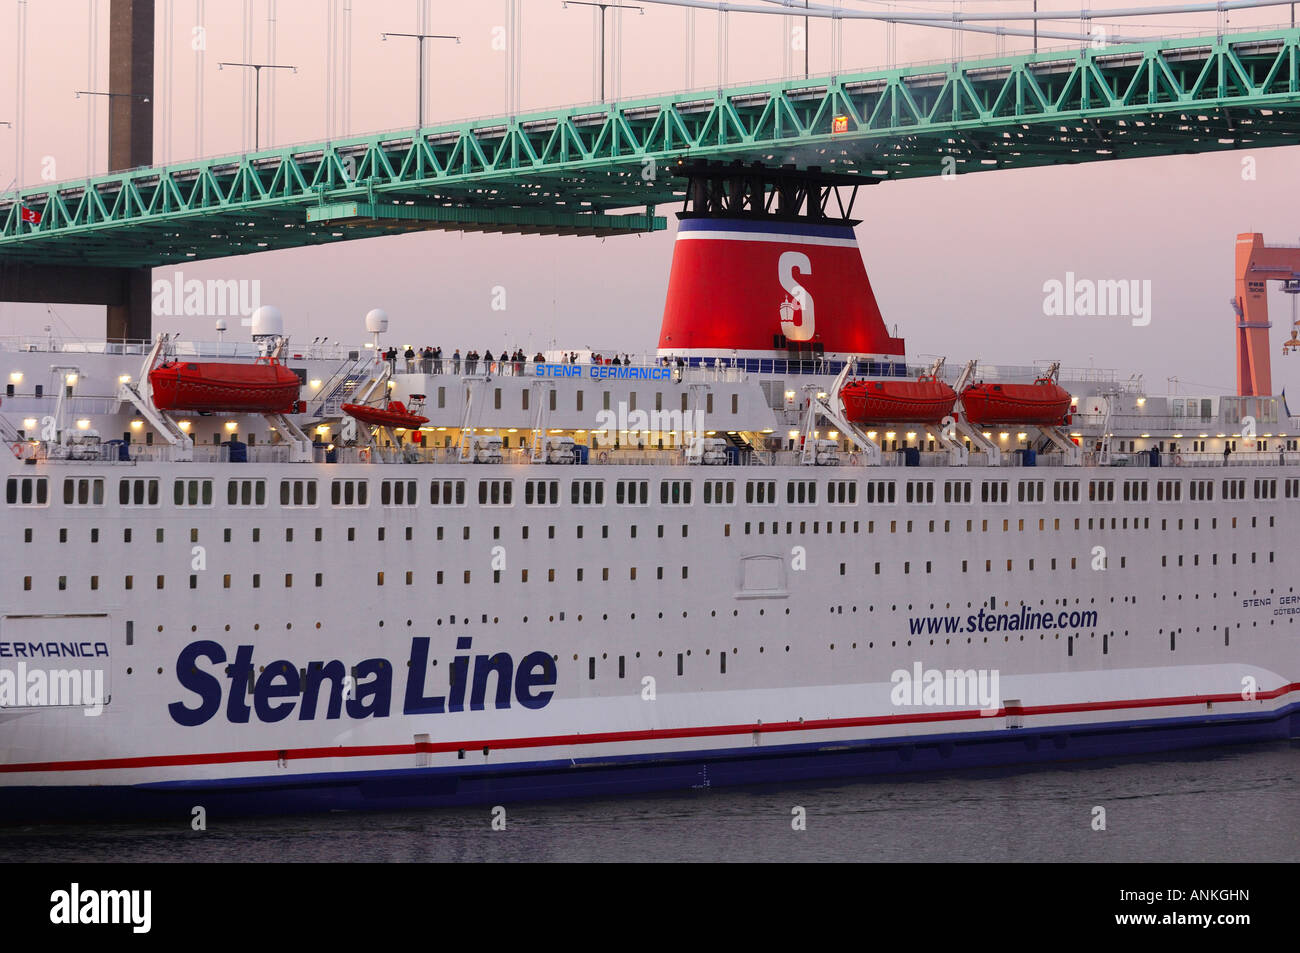 Cruise ship under bridge in Gothenburg, Sweden Stock Photo